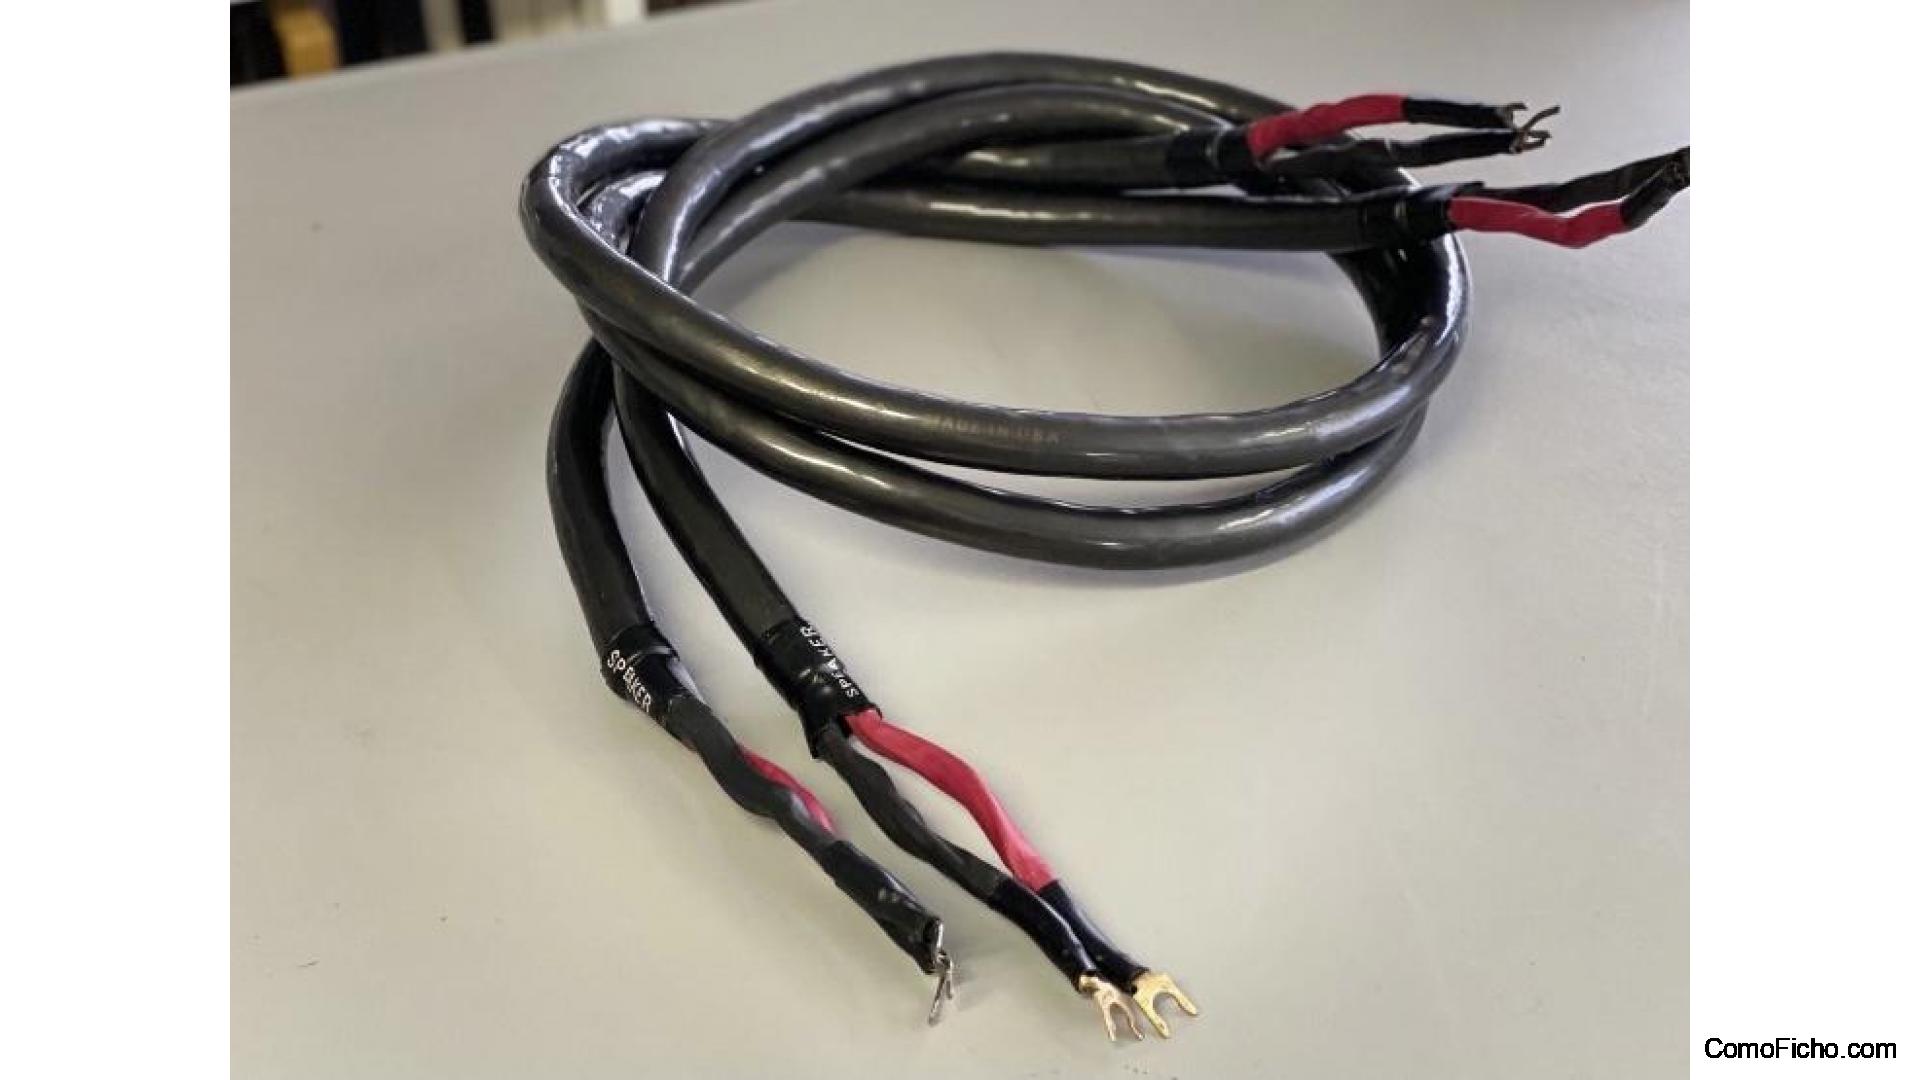 Sold Audioquest Dragon Hyperlitz Cables de Altavoz For sale Barcelona